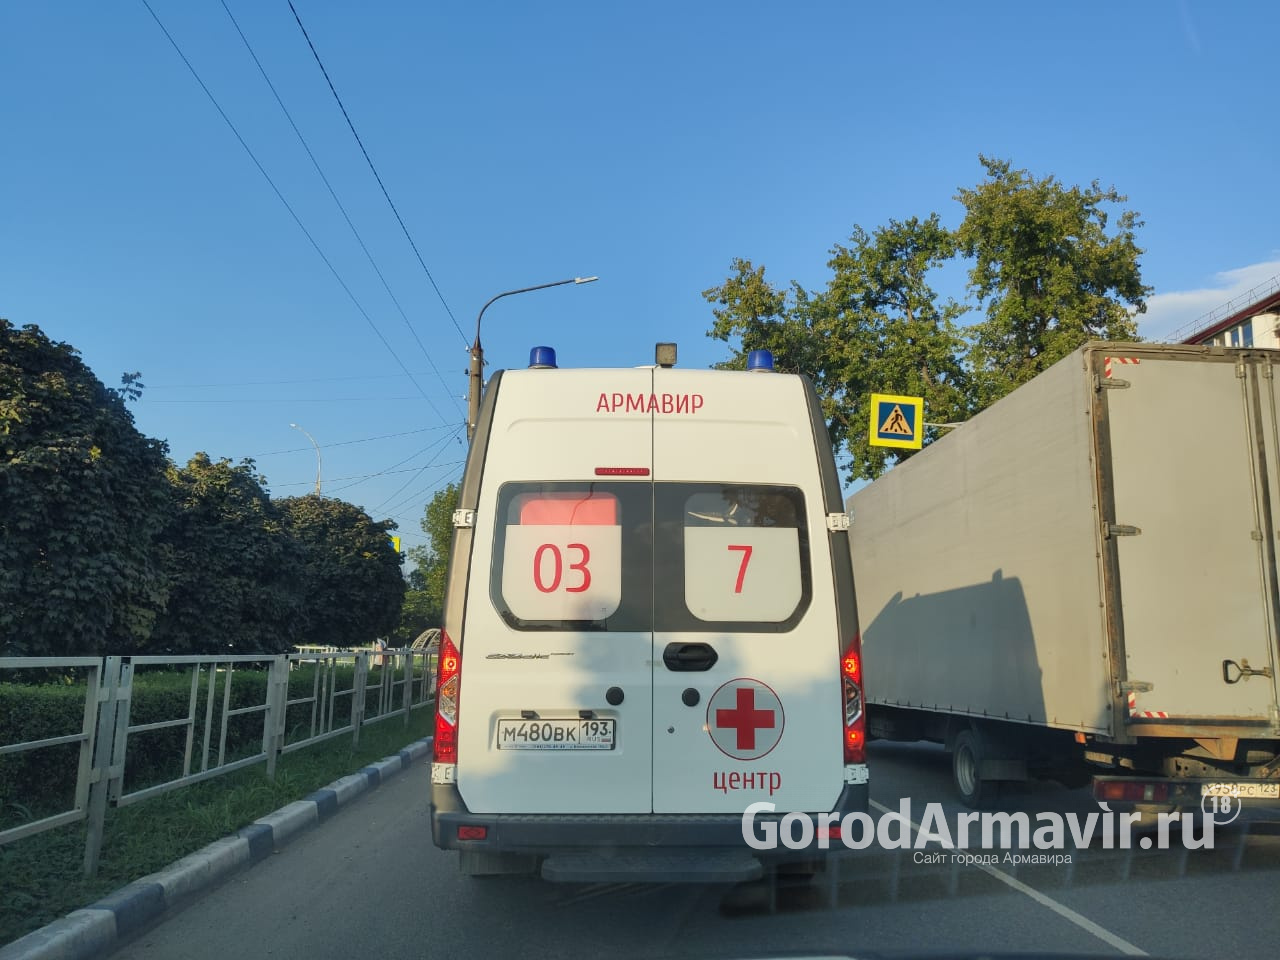 Шесть человек были доставлены в госпиталь с диагнозом «Коронавирус» в Армавире